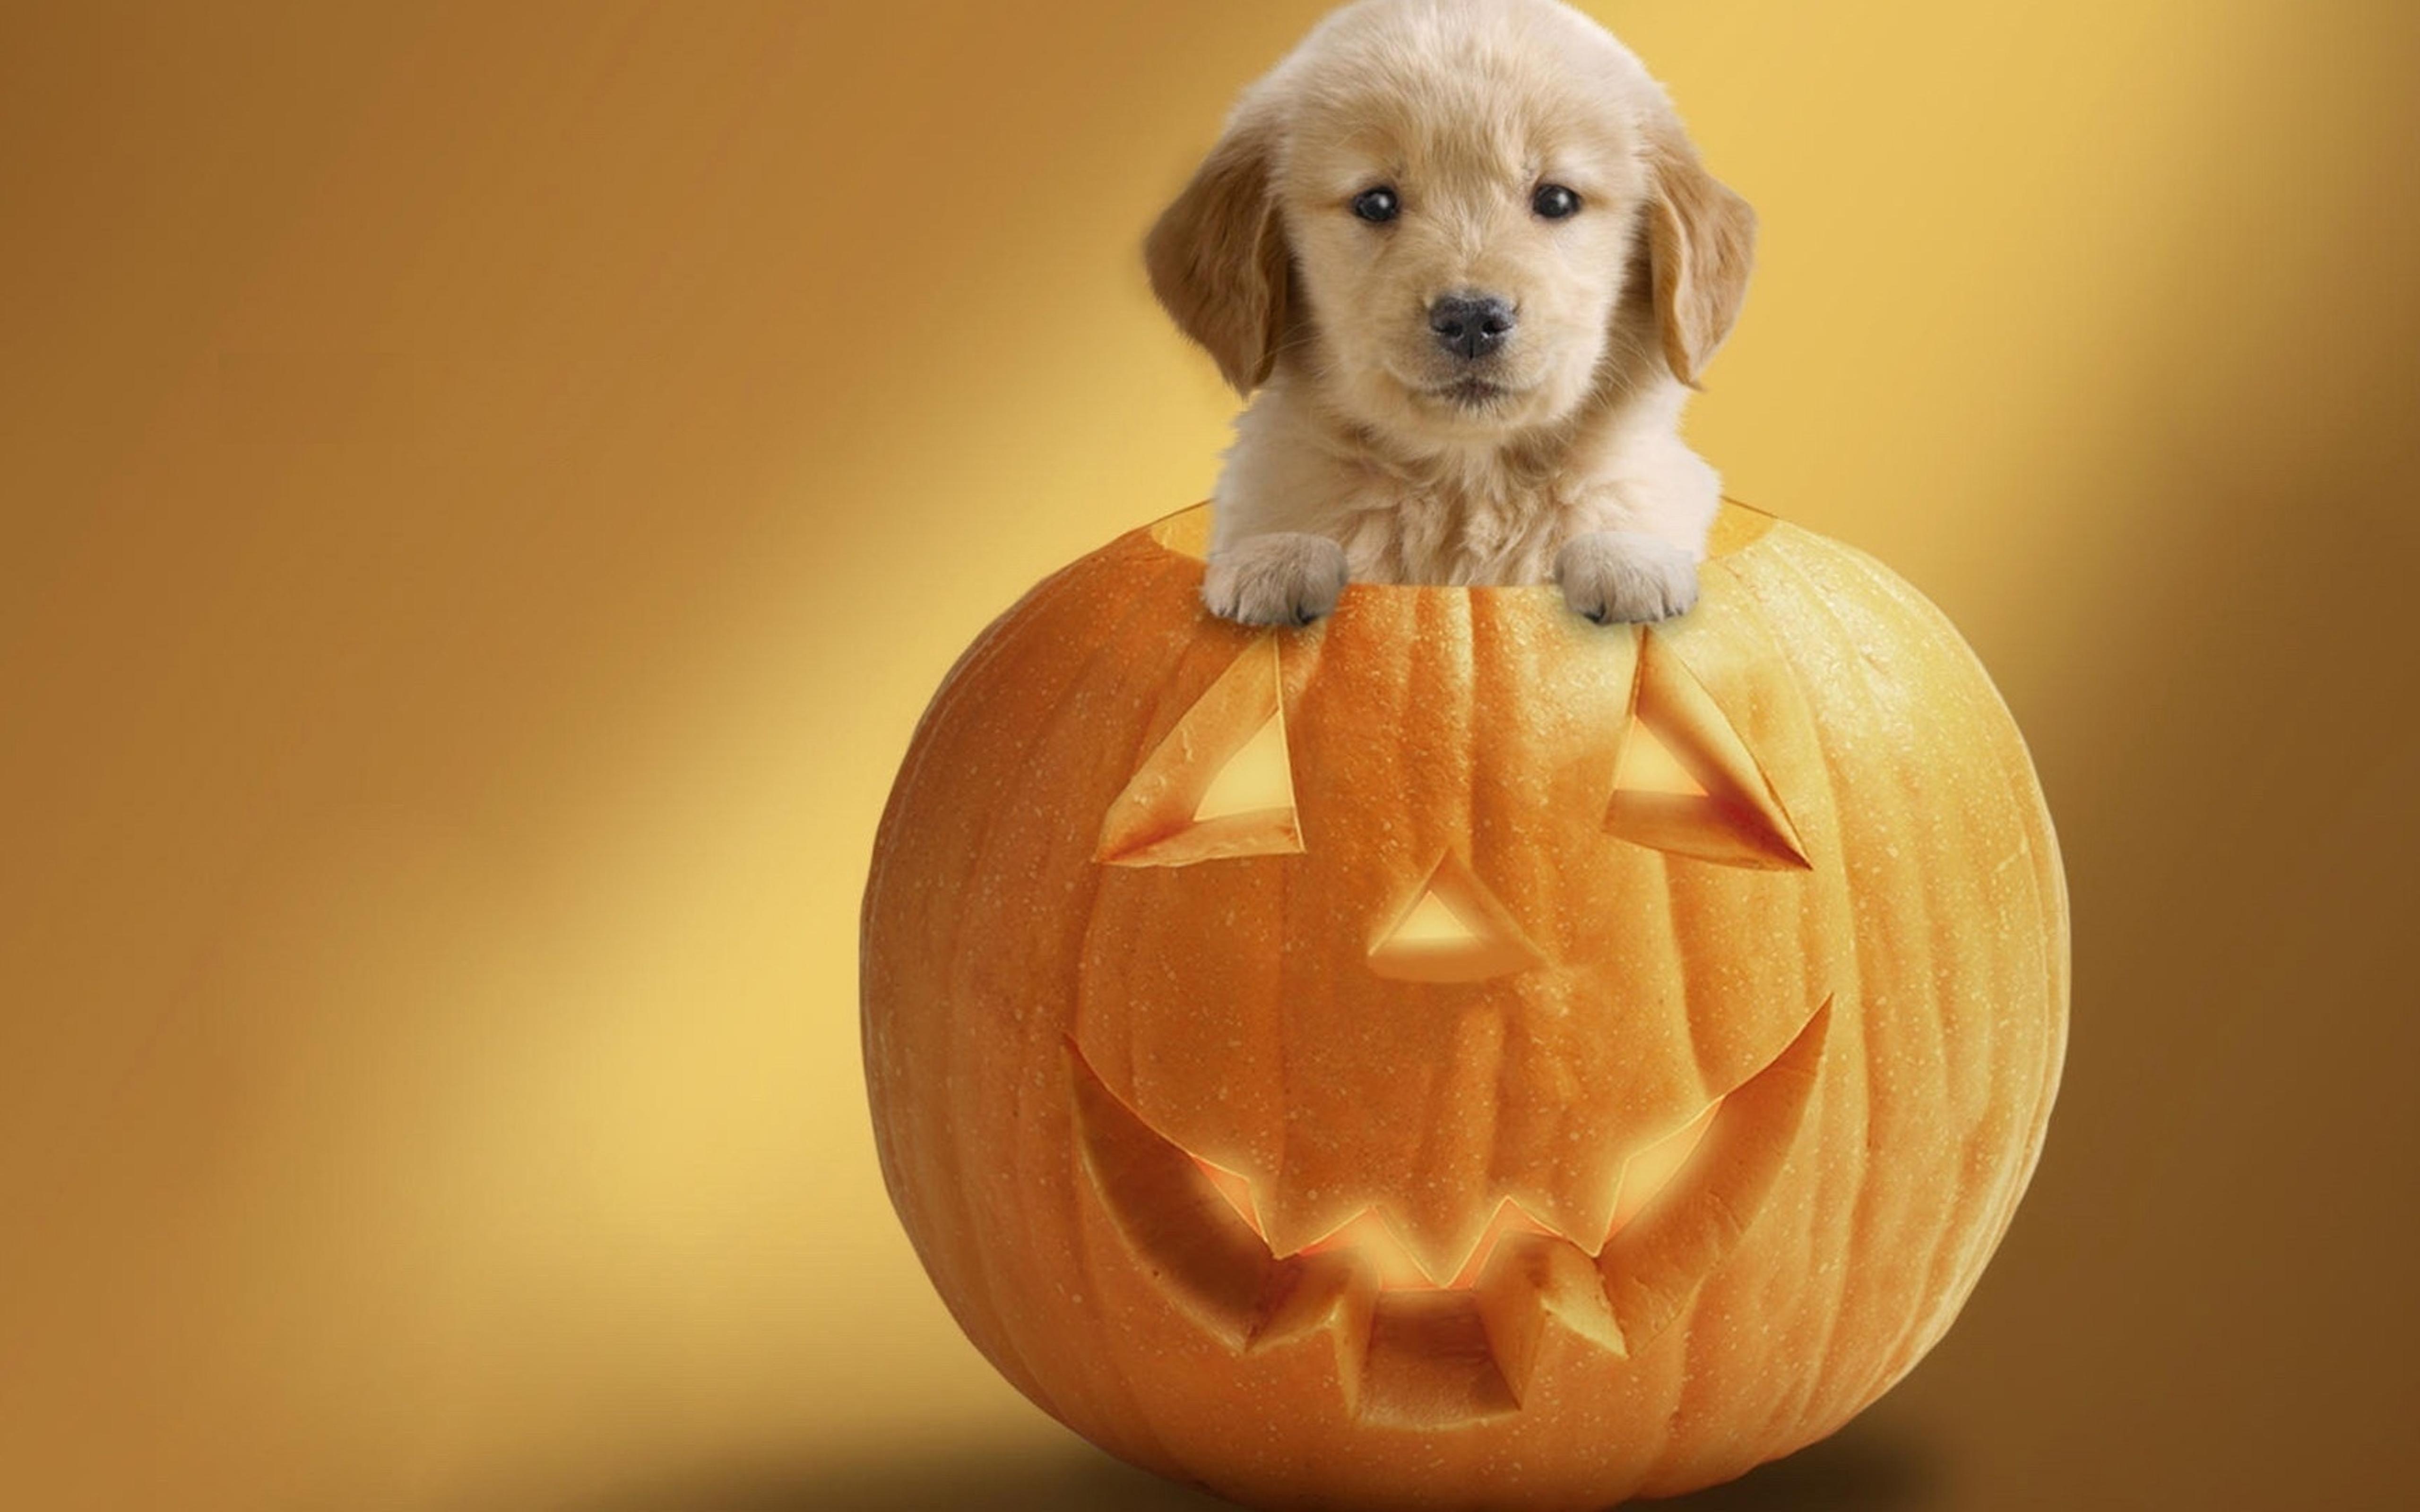 Cute puppy in a pumpkin